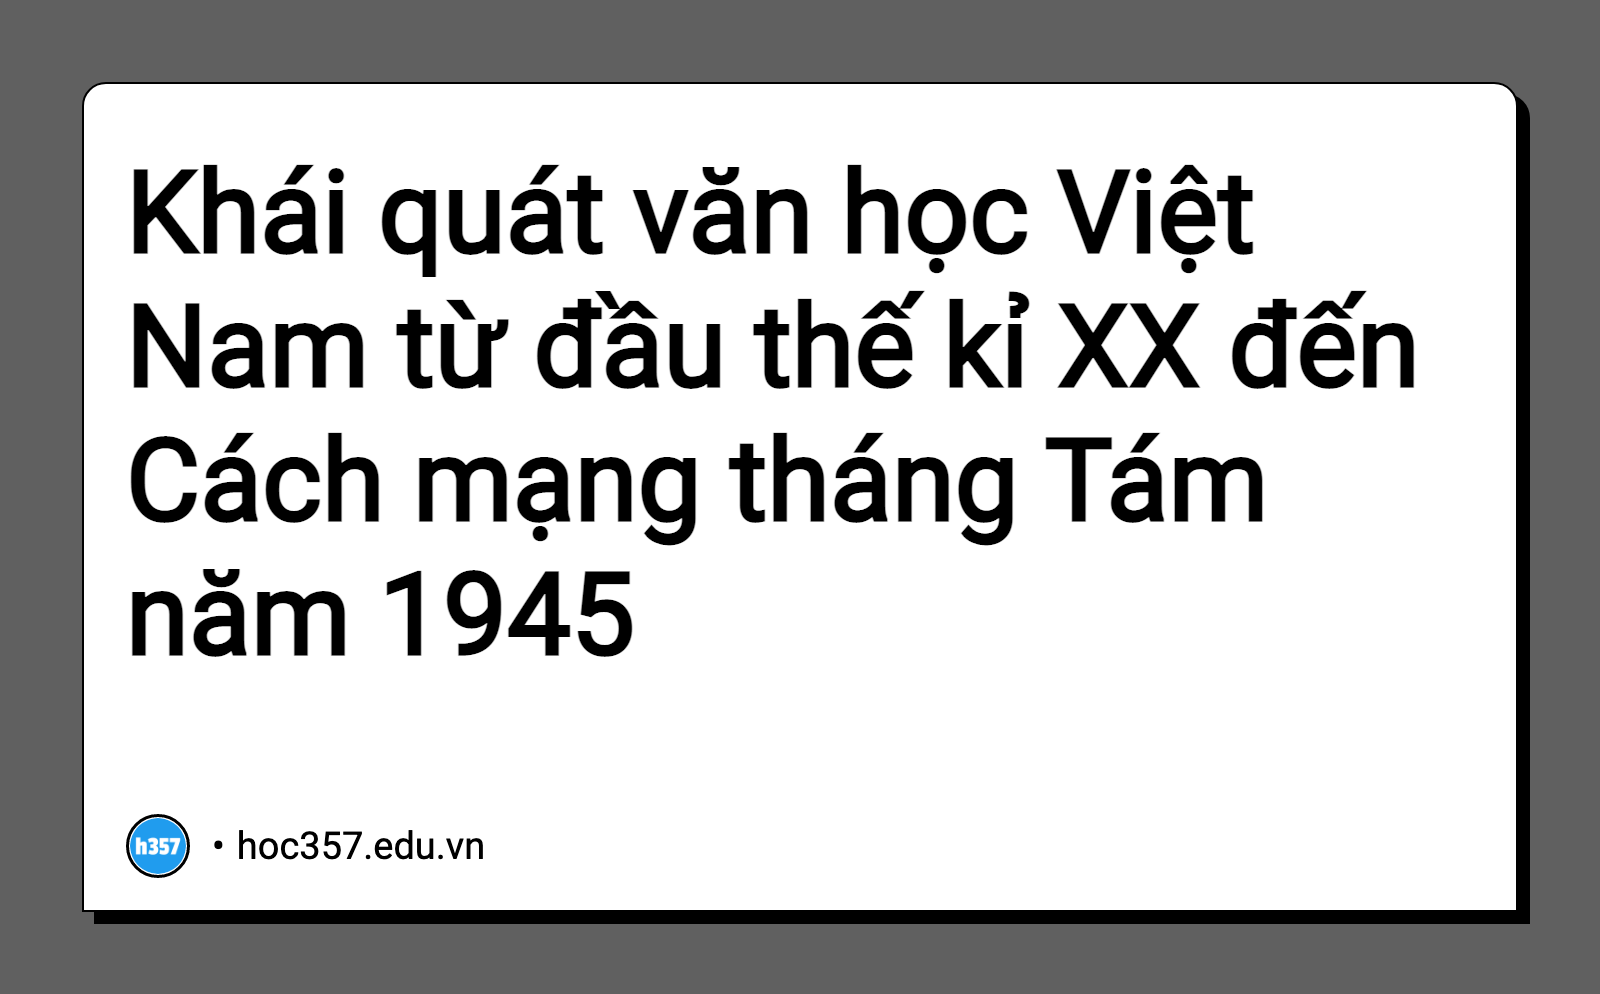 Hình minh họa Khái quát văn học Việt Nam từ đầu thế kỉ XX đến Cách mạng tháng Tám năm 1945